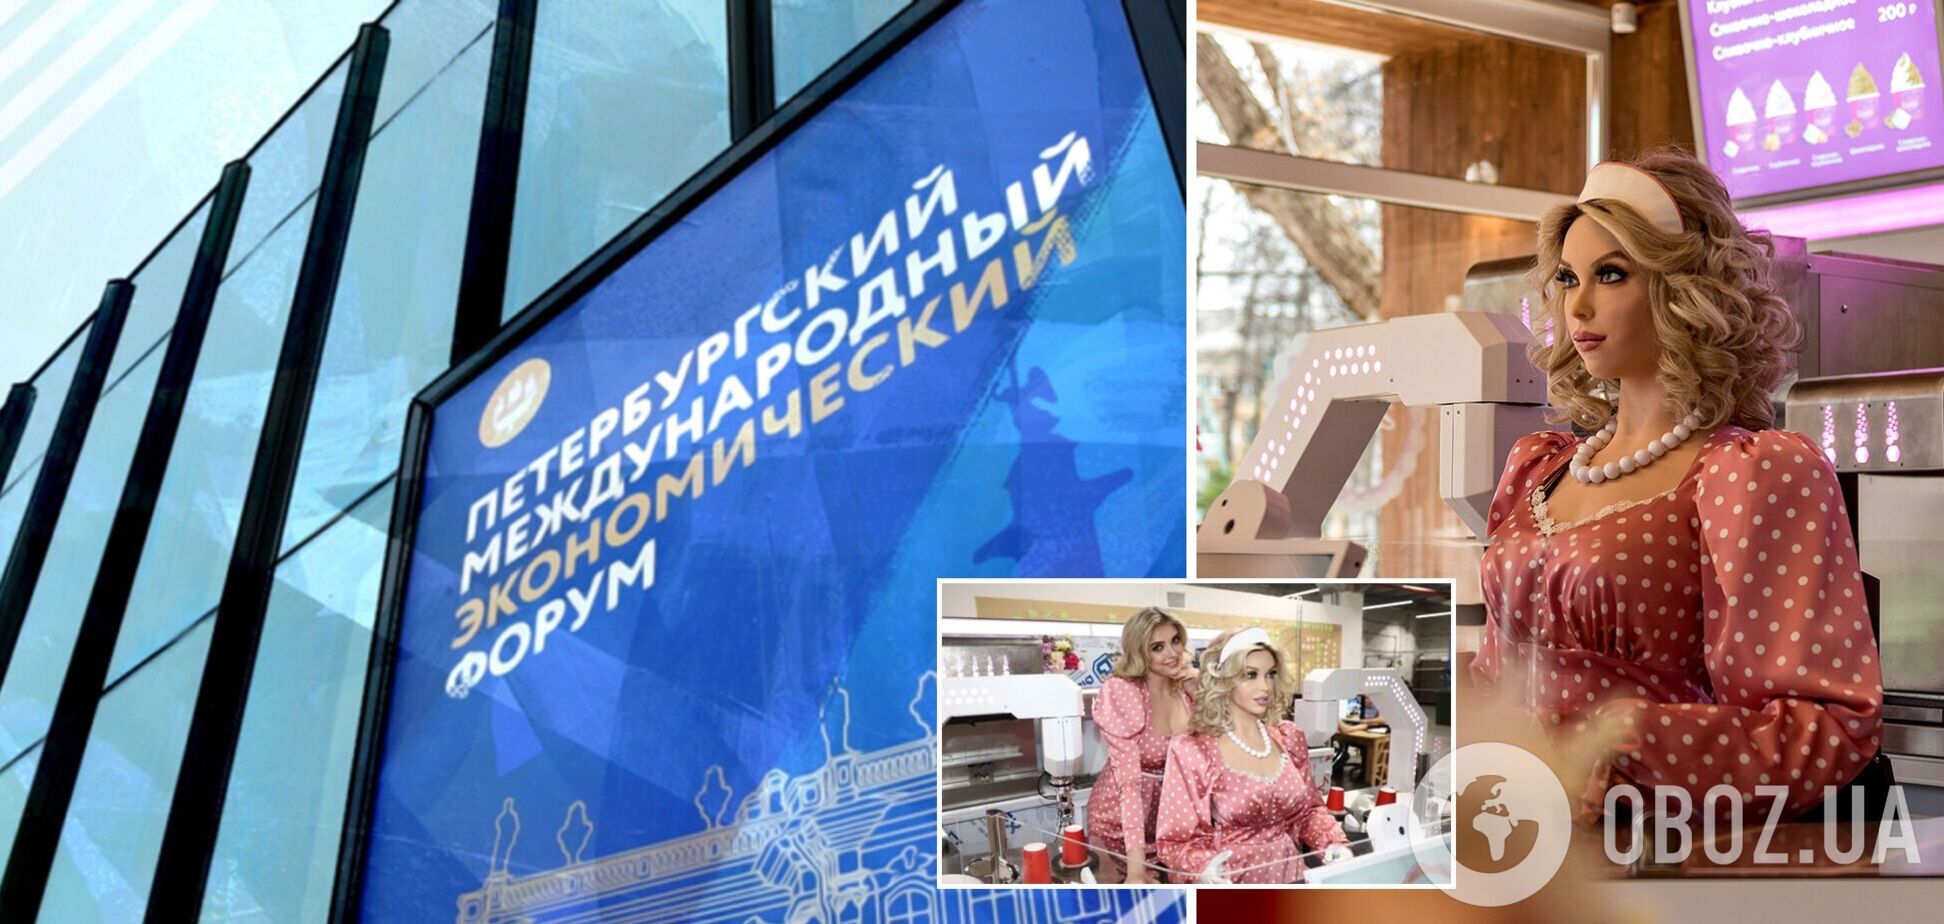 У Росії на Економічному форумі представили робота Дуняшу в образі радянської буфетниці: вміє робити каву й танцювати. Відео